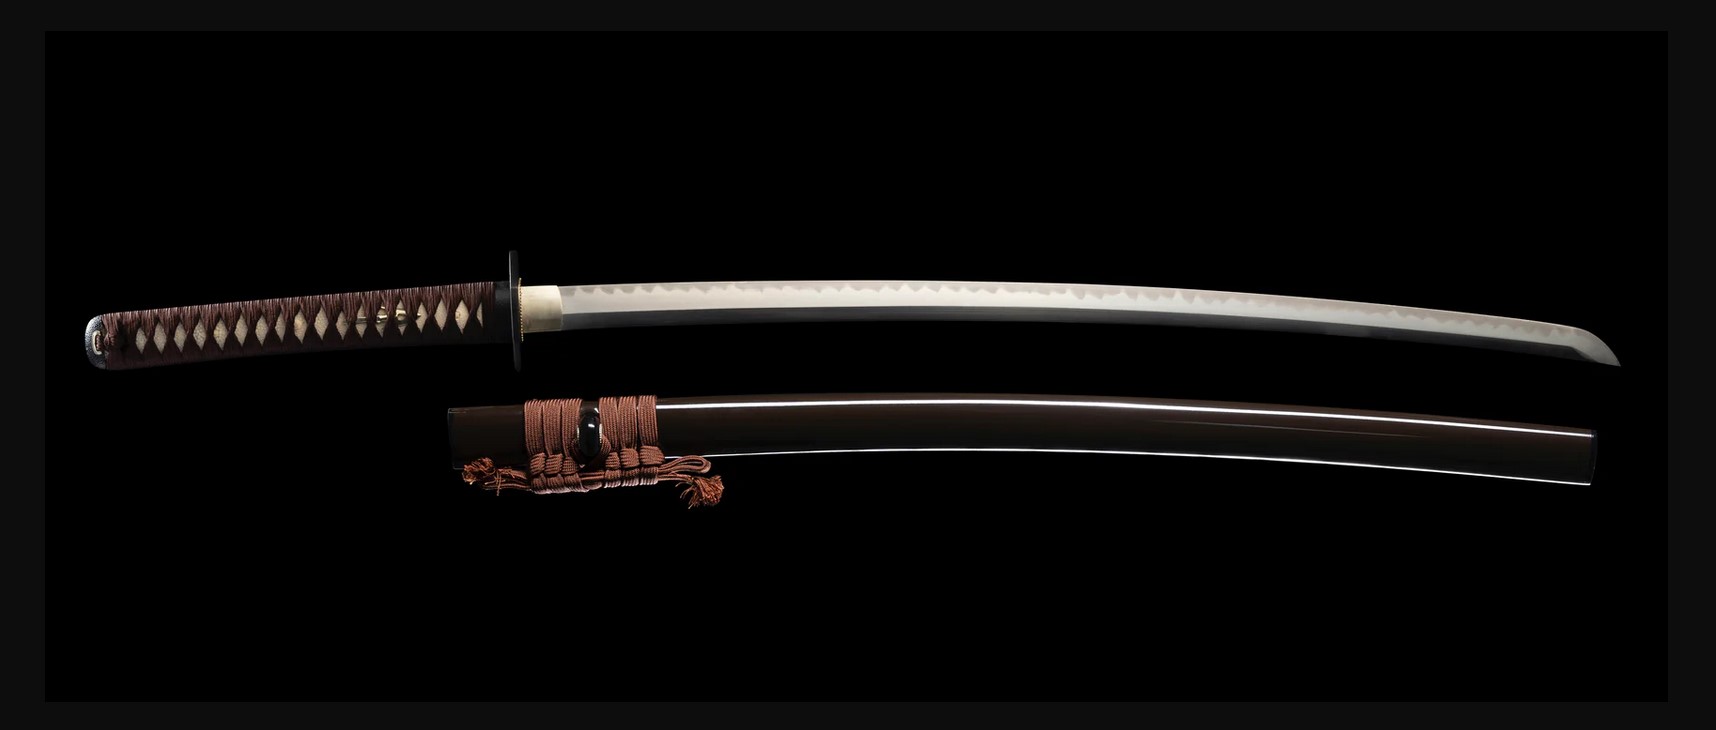 Amourer's Katana, 73,66 cm Blade Length, 30,48 cm Handle Length